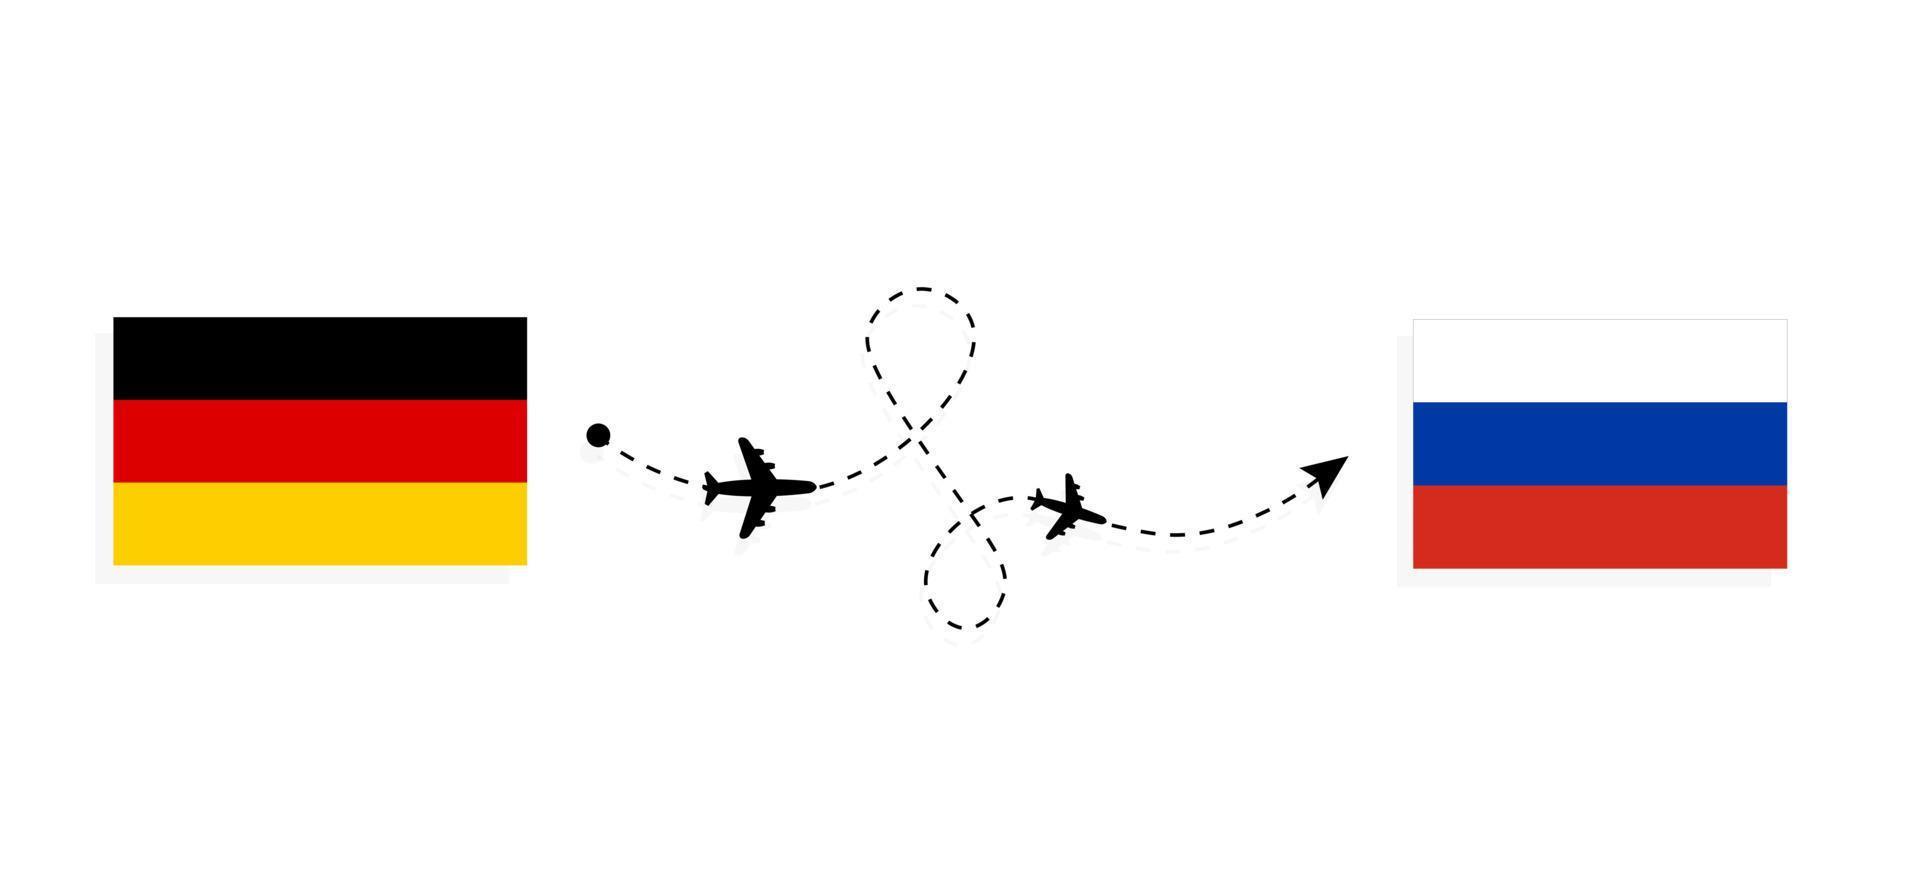 flyg och resor från Tyskland till Ryssland med passagerarflygplan vektor